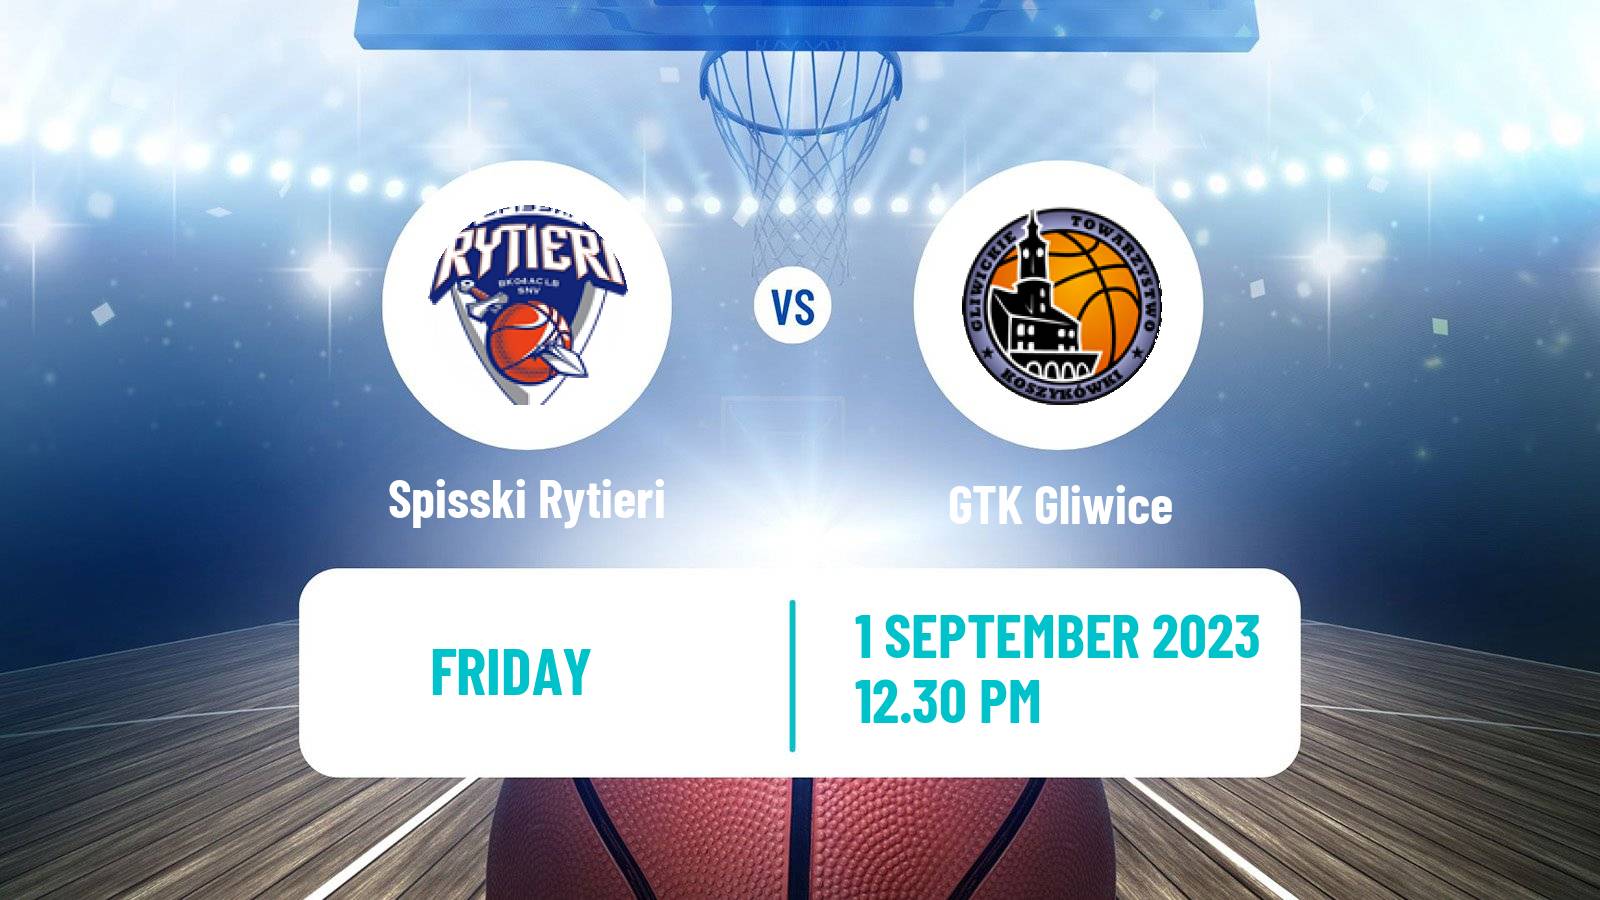 Basketball Club Friendly Basketball Spisski Rytieri - GTK Gliwice